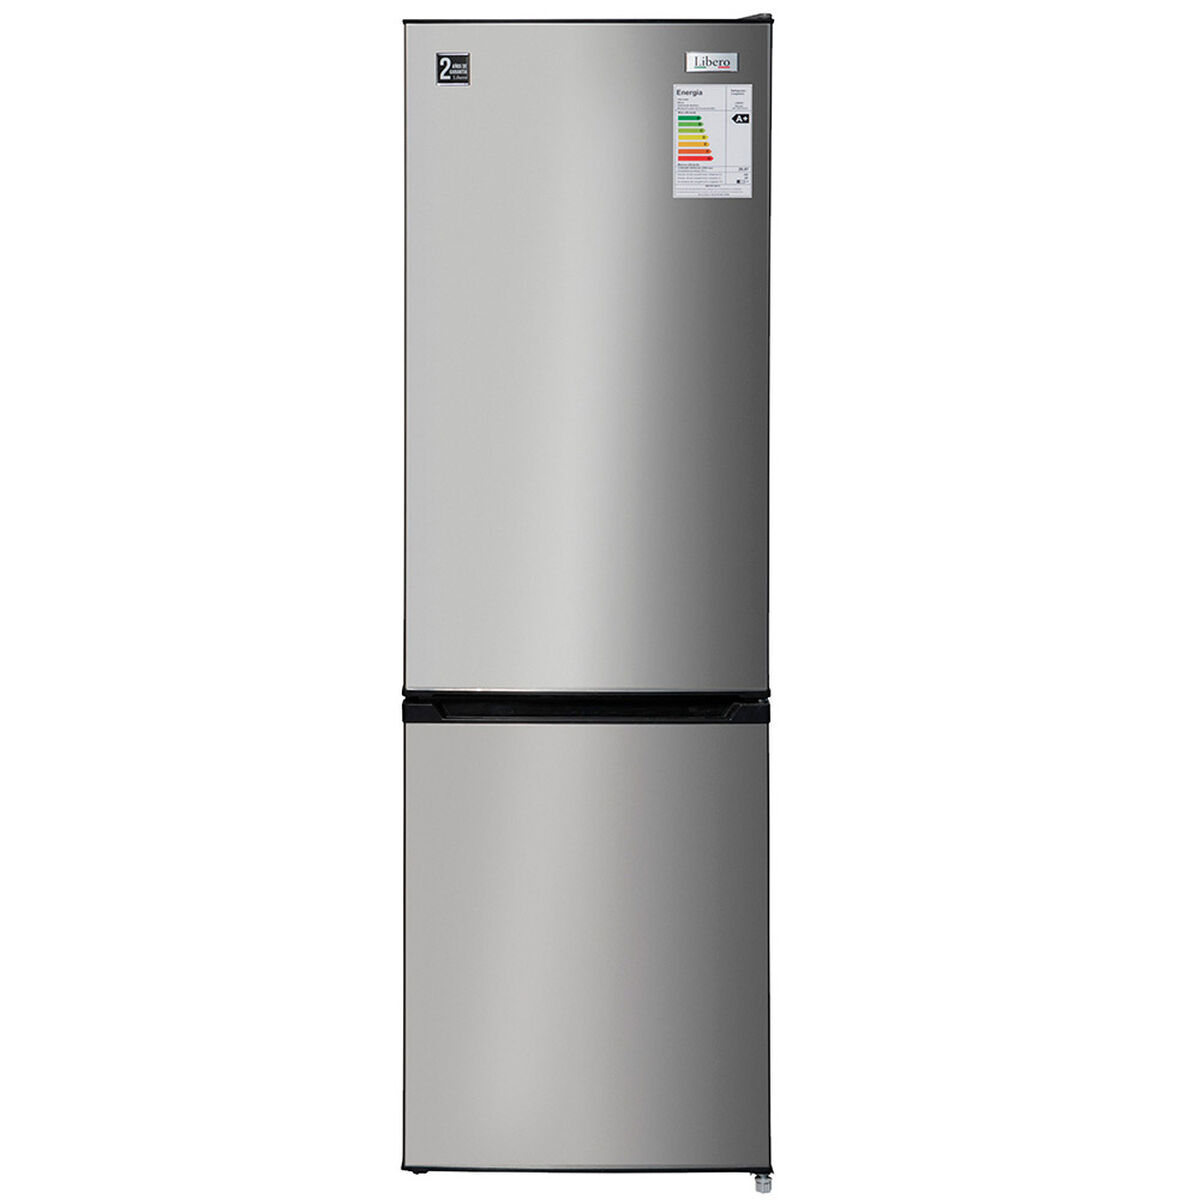 Refrigerador No Frost Libero LRB 280NFI 250 lt